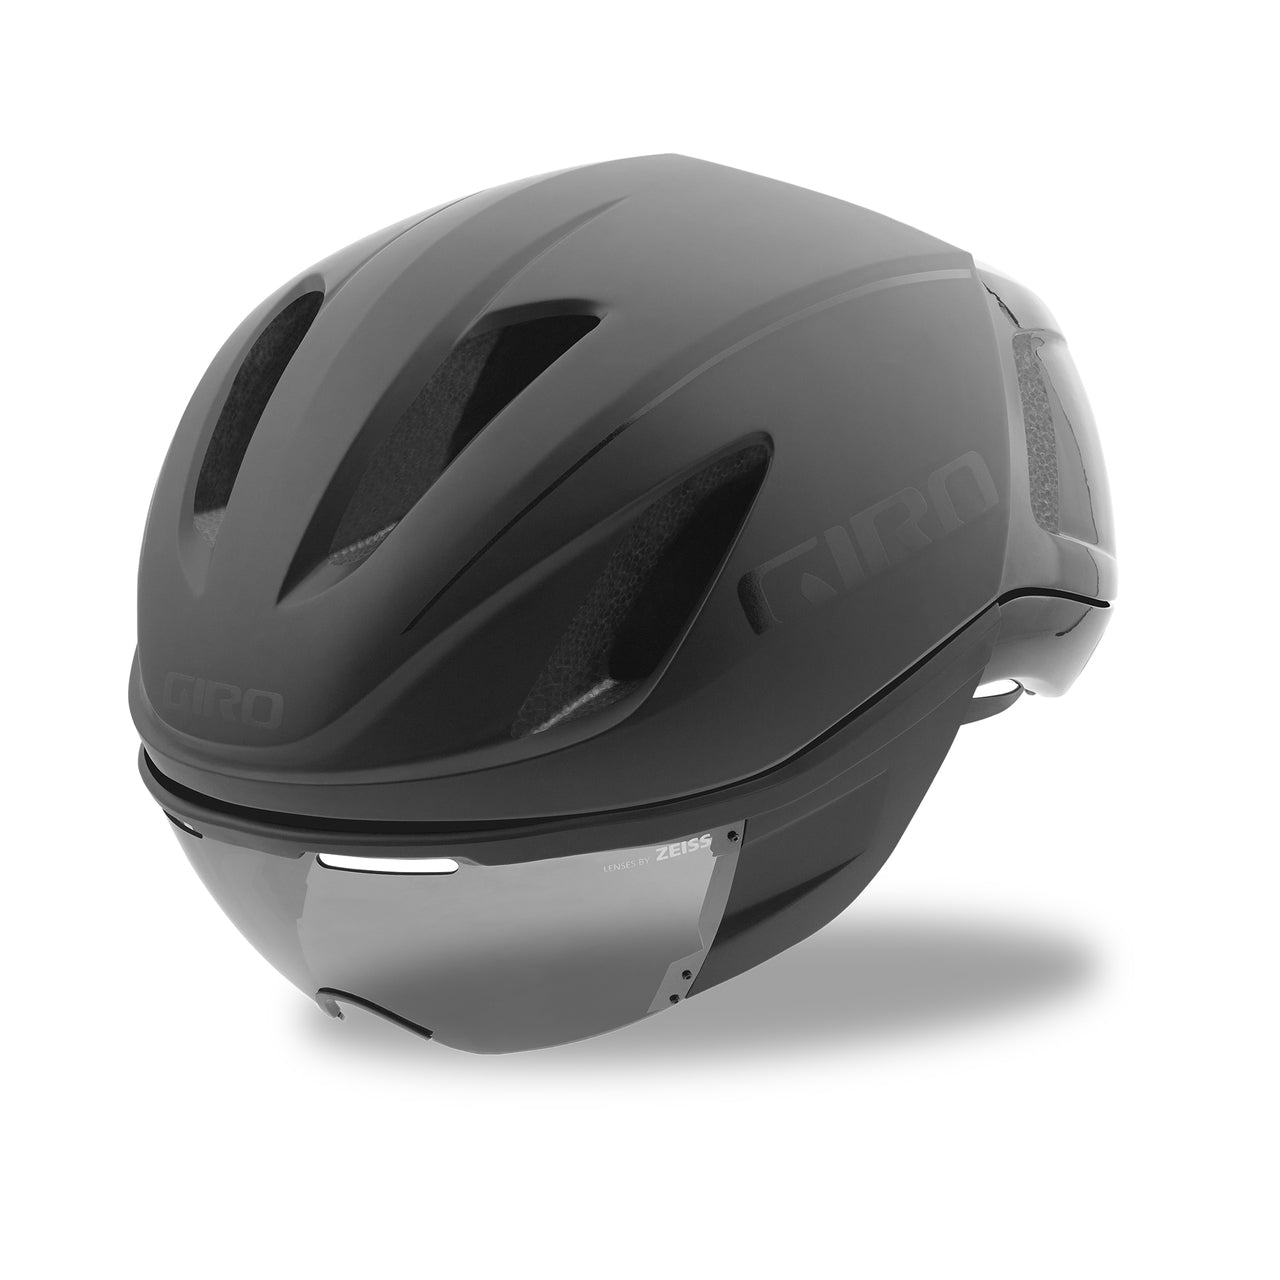 Giro Vanquish MIPS AF Helmet with shield/Giro Vanquish MIPS AF Helmet with shield